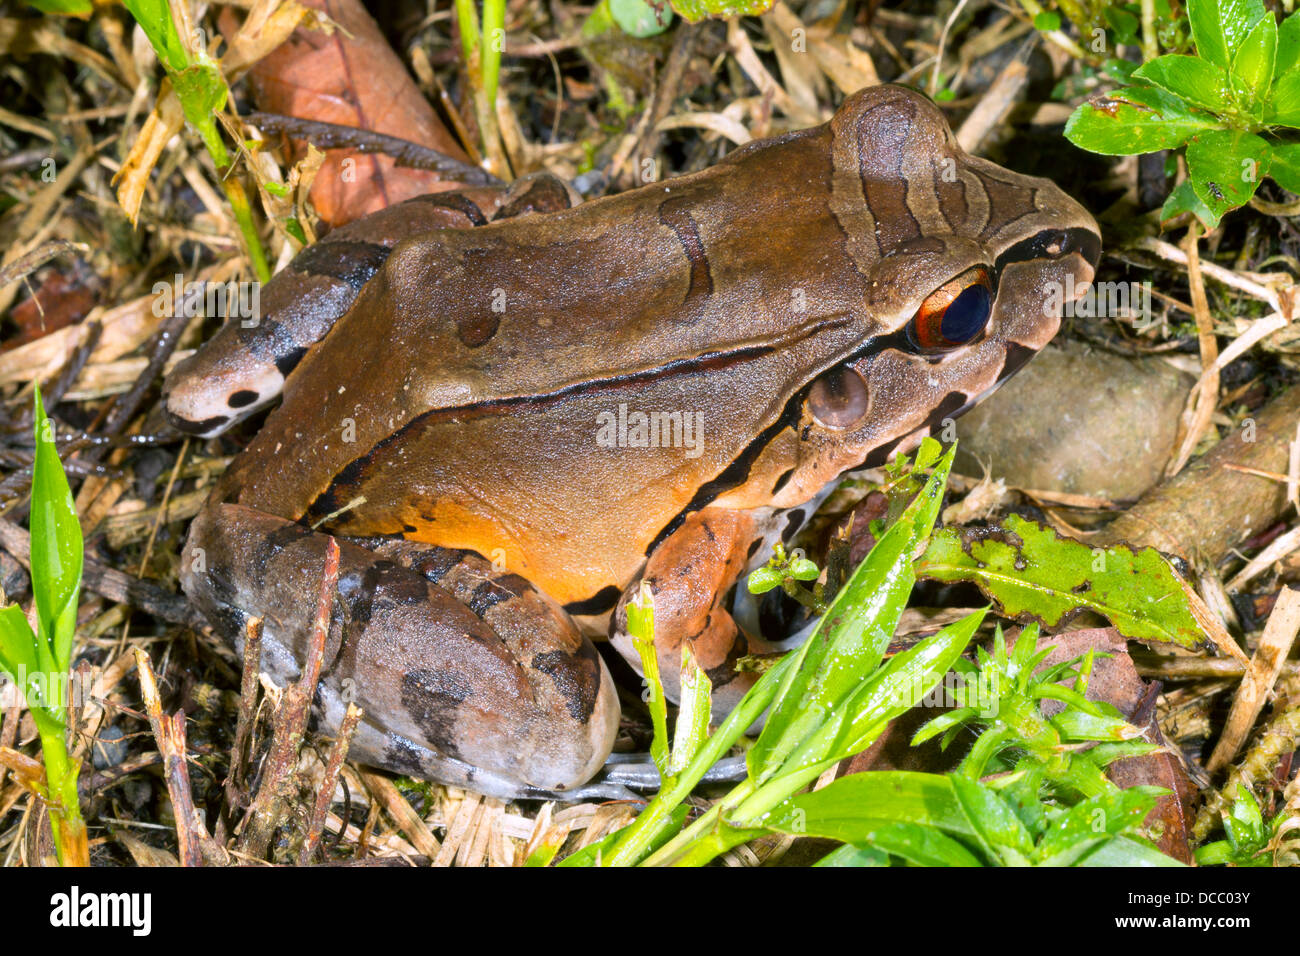 Fumé (Leptodactylus pentadactylus Grenouille Jungle) en Amazonie équatorienne Banque D'Images